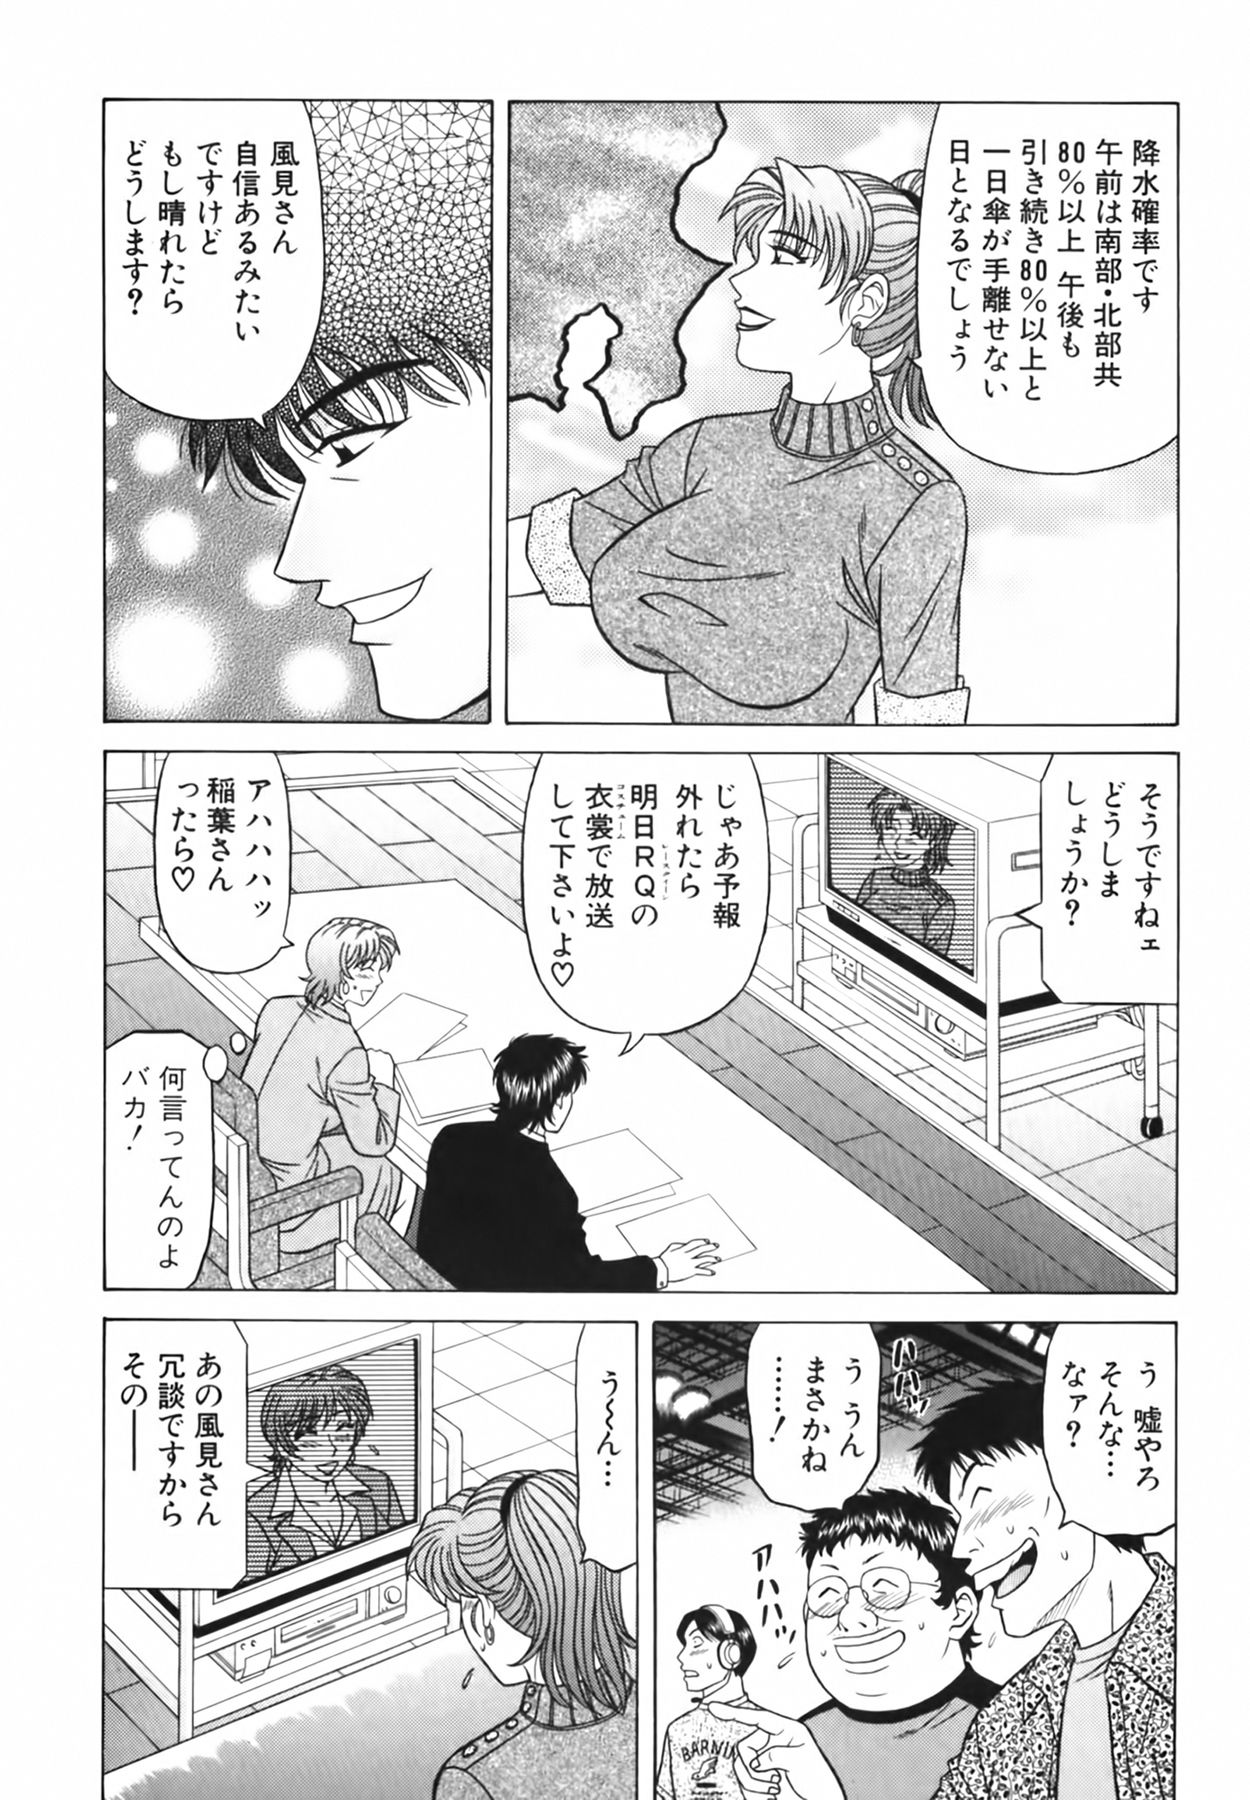 [Ozaki Akira] Caster Natsume Reiko no Yuuwaku Vol. 3 [尾崎晶] キャスター 夏目玲子の誘惑 Vol.3